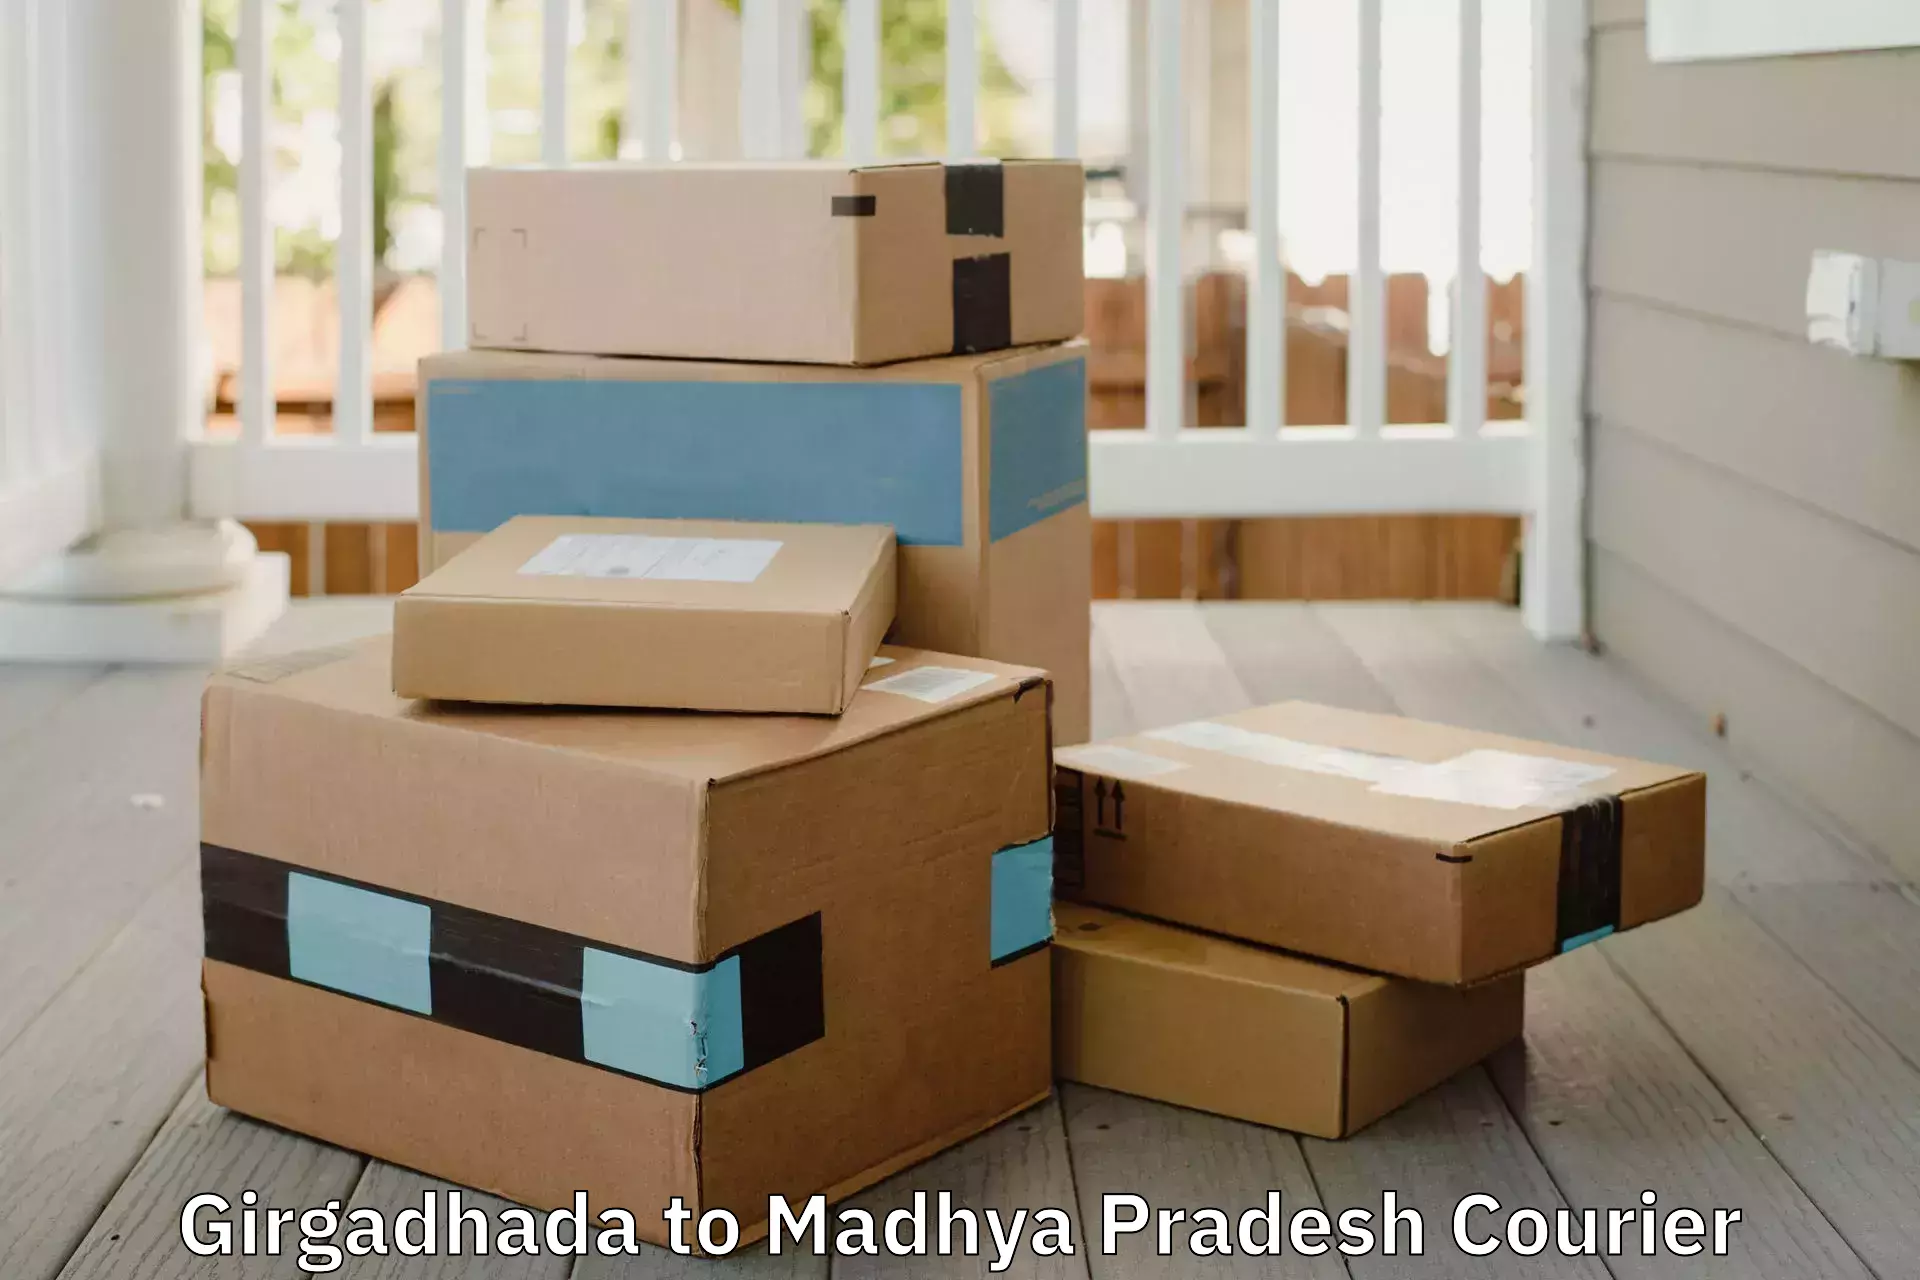 Local furniture movers Girgadhada to Rehli